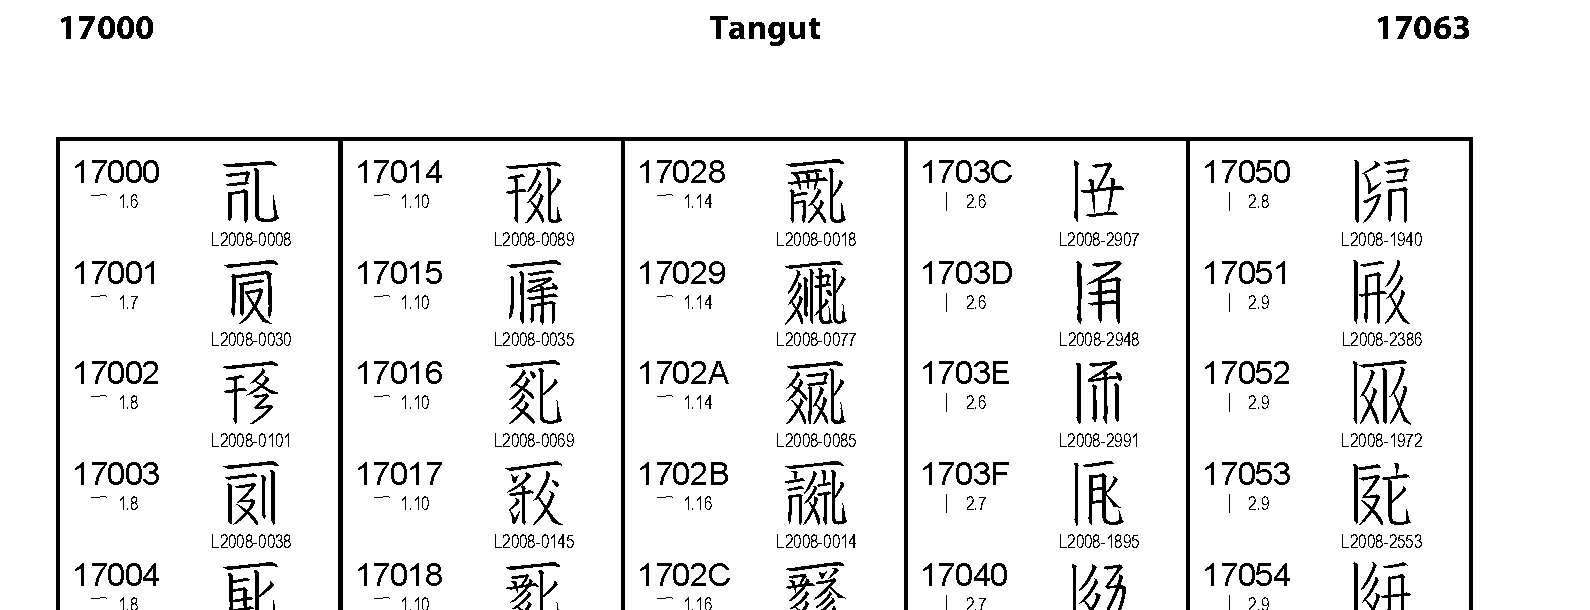 Unicode - Tangut